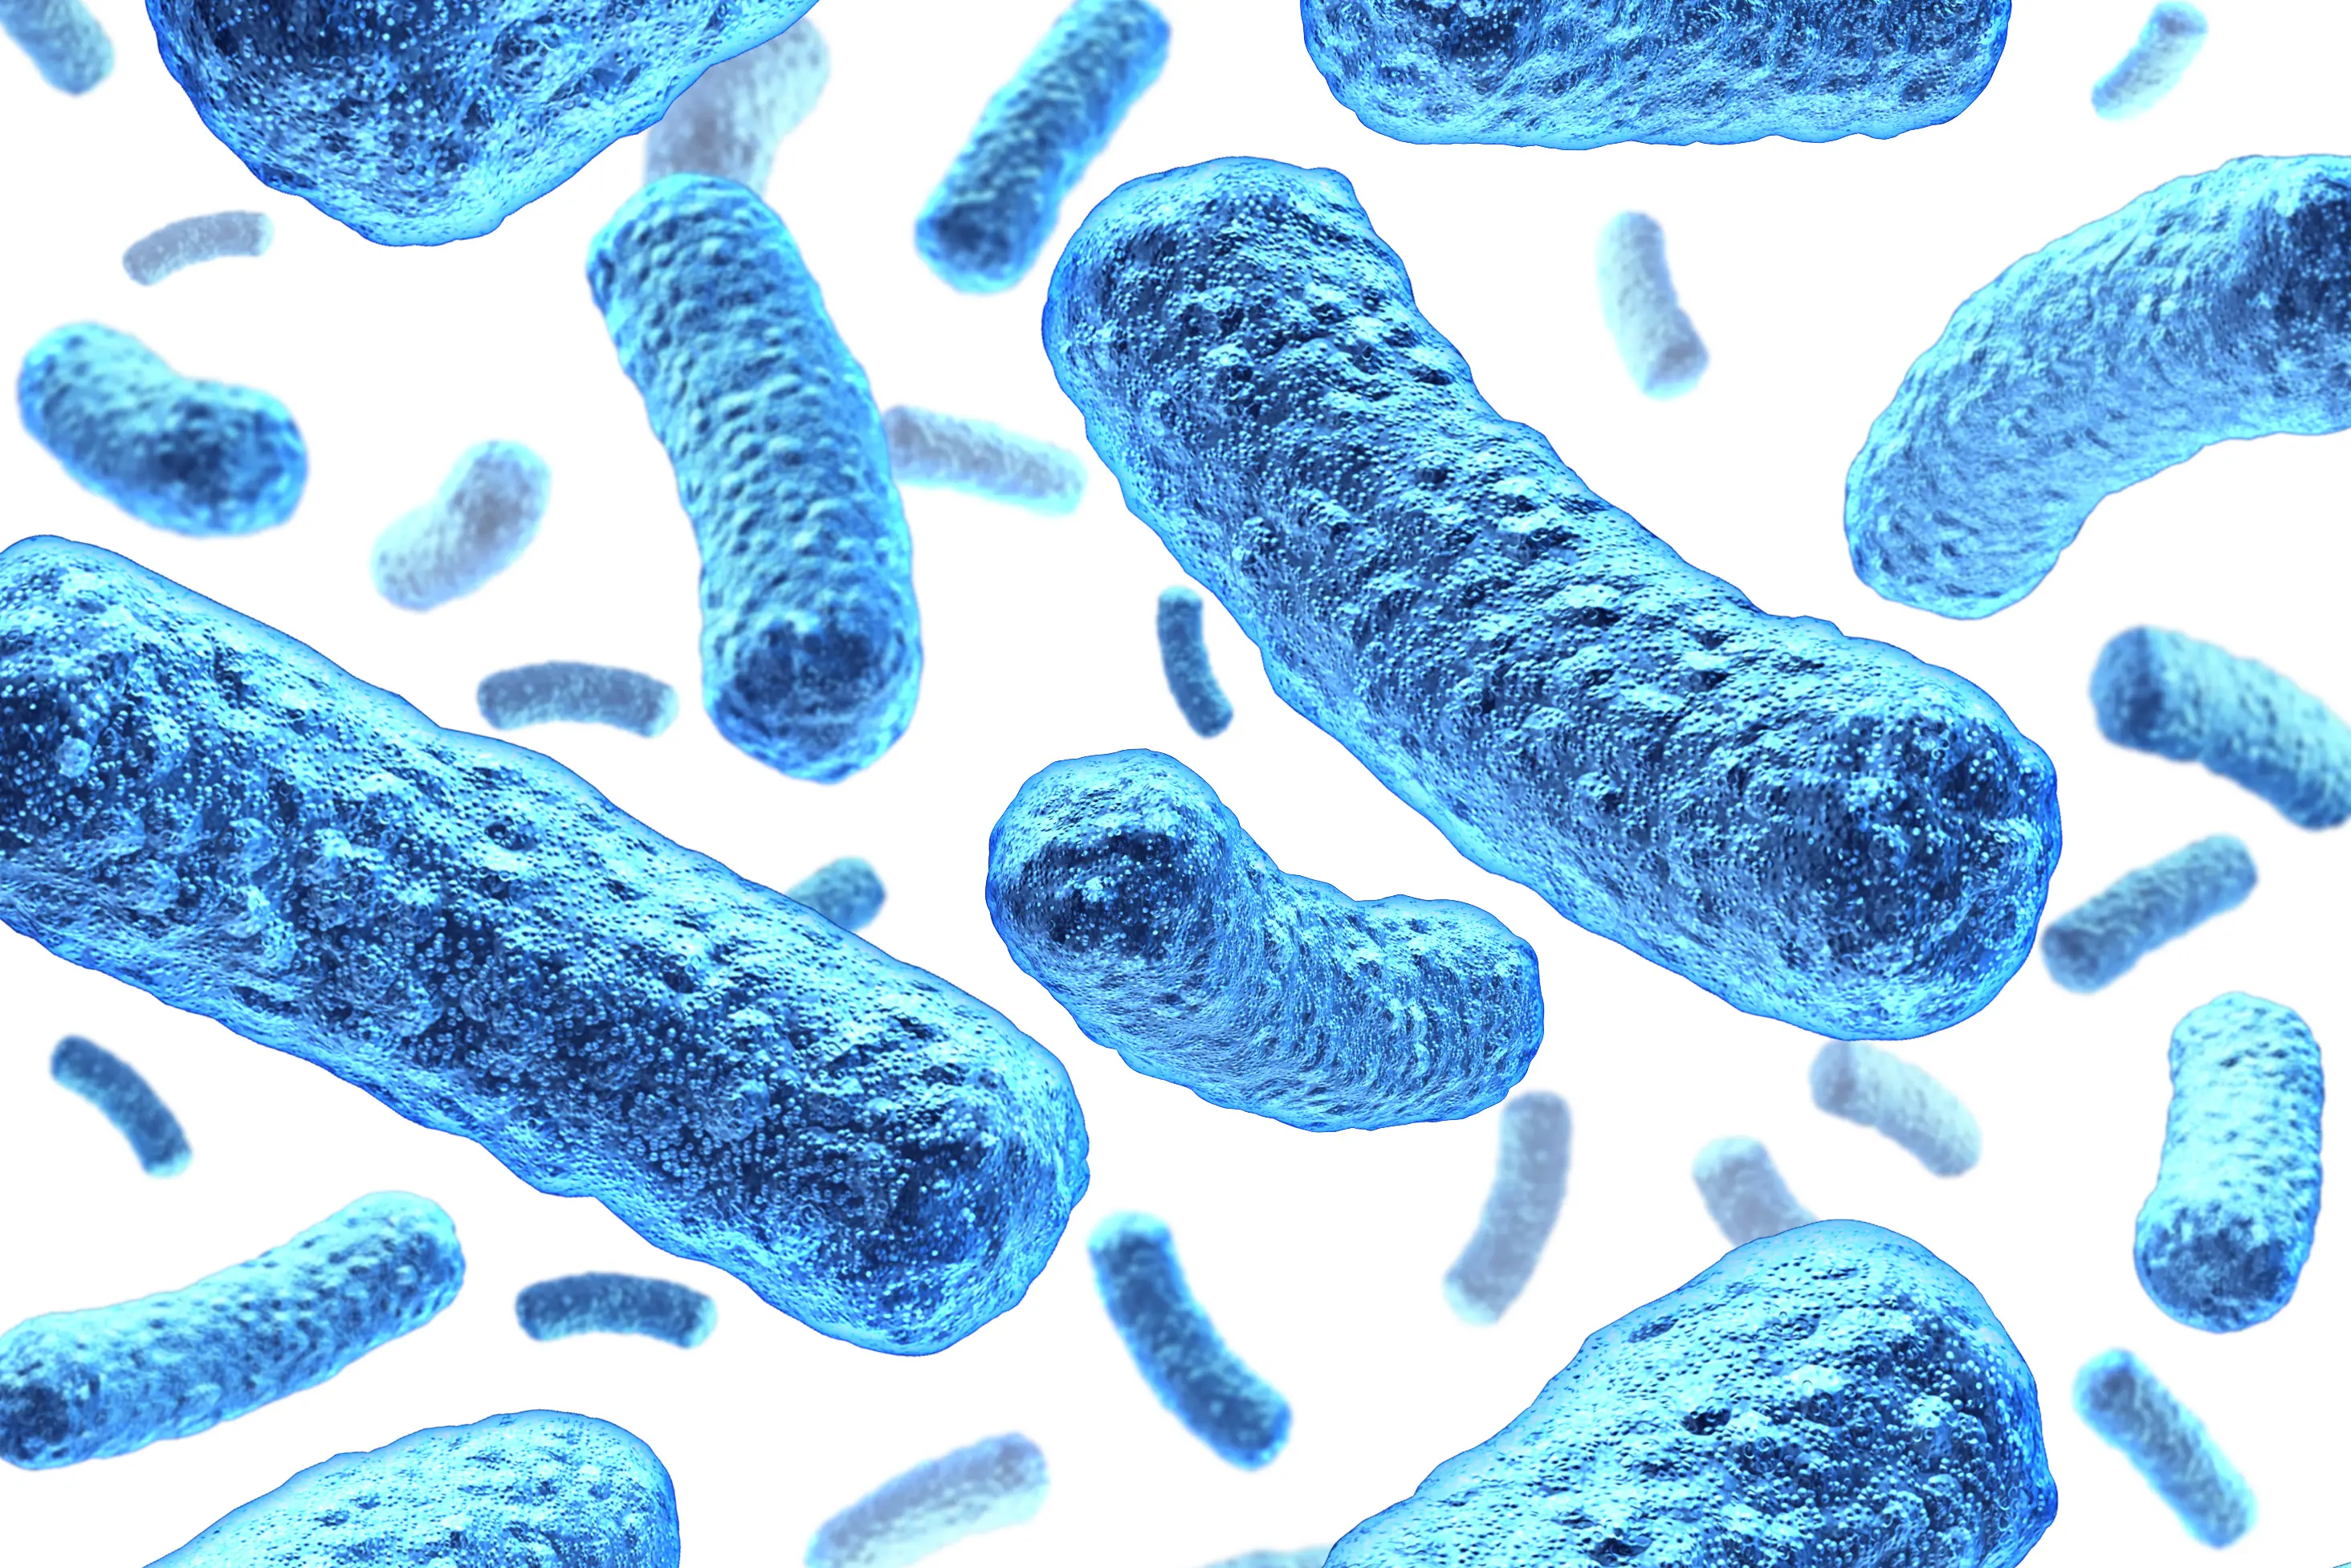 Bilde av blåe bakterier som ser ut som cheesedoddles.